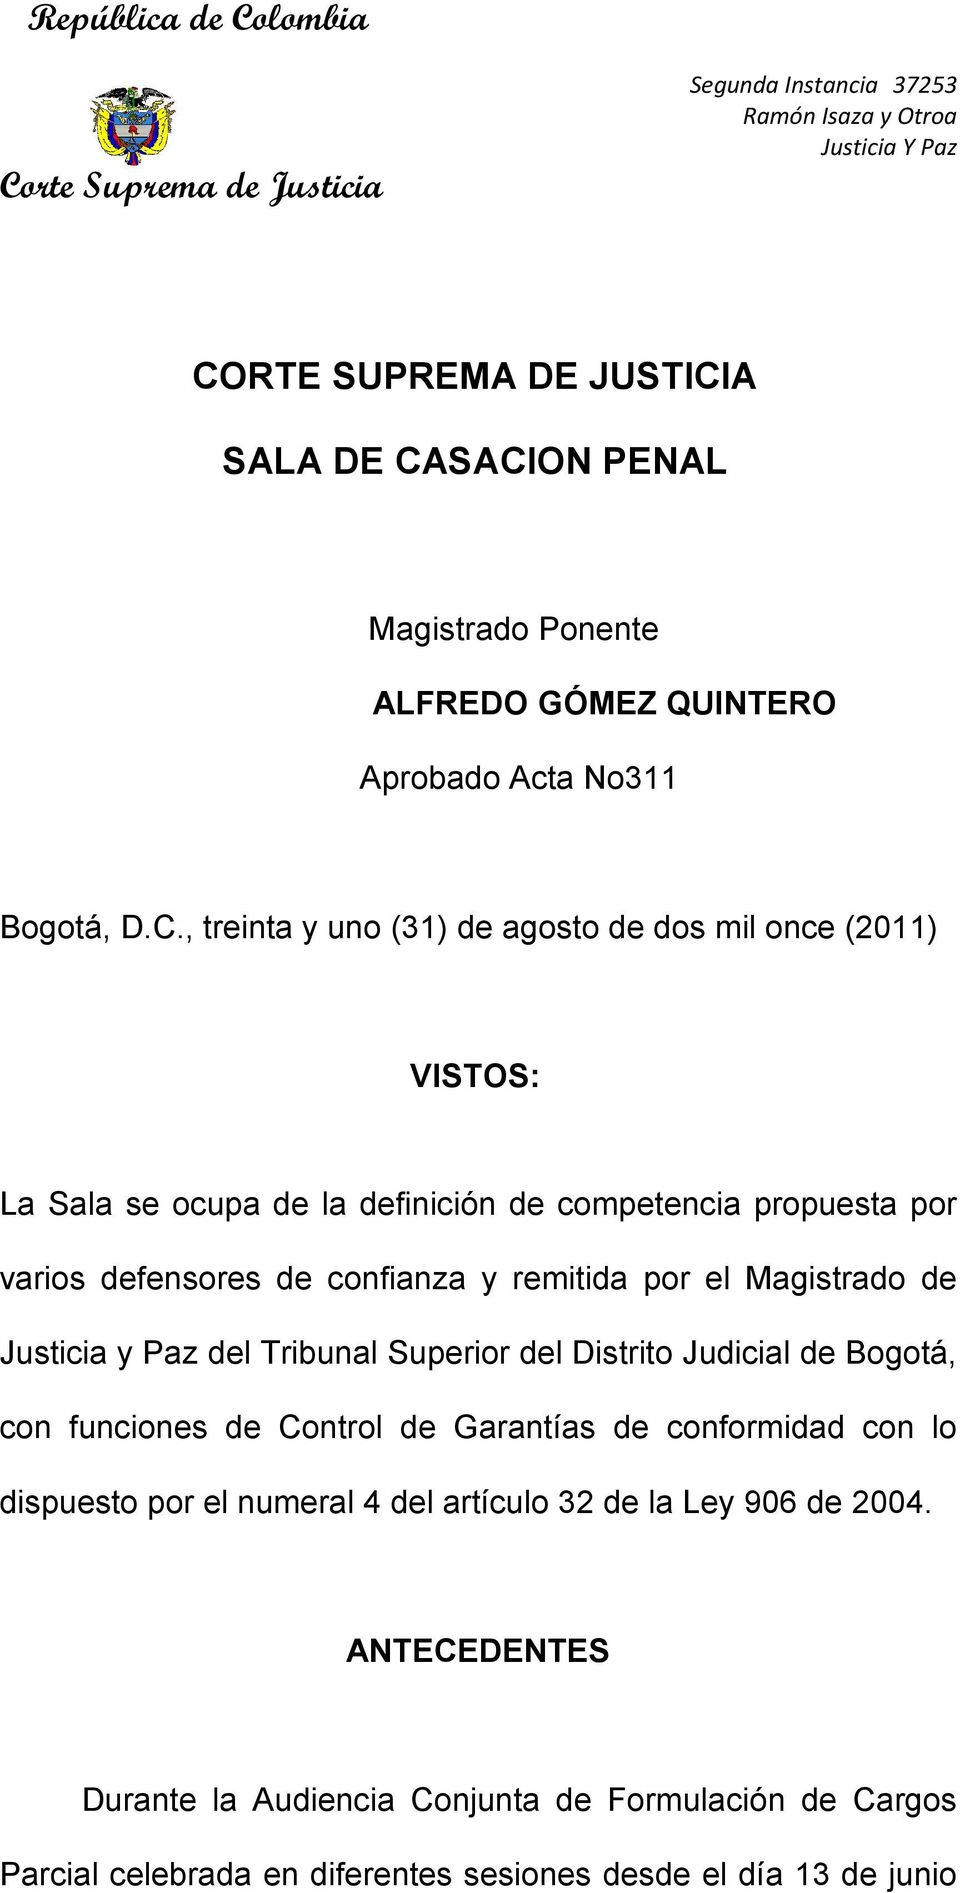 Justicia y Paz del Tribunal Superior del Distrito Judicial de Bogotá, con funciones de Control de Garantías de conformidad con lo dispuesto por el numeral 4